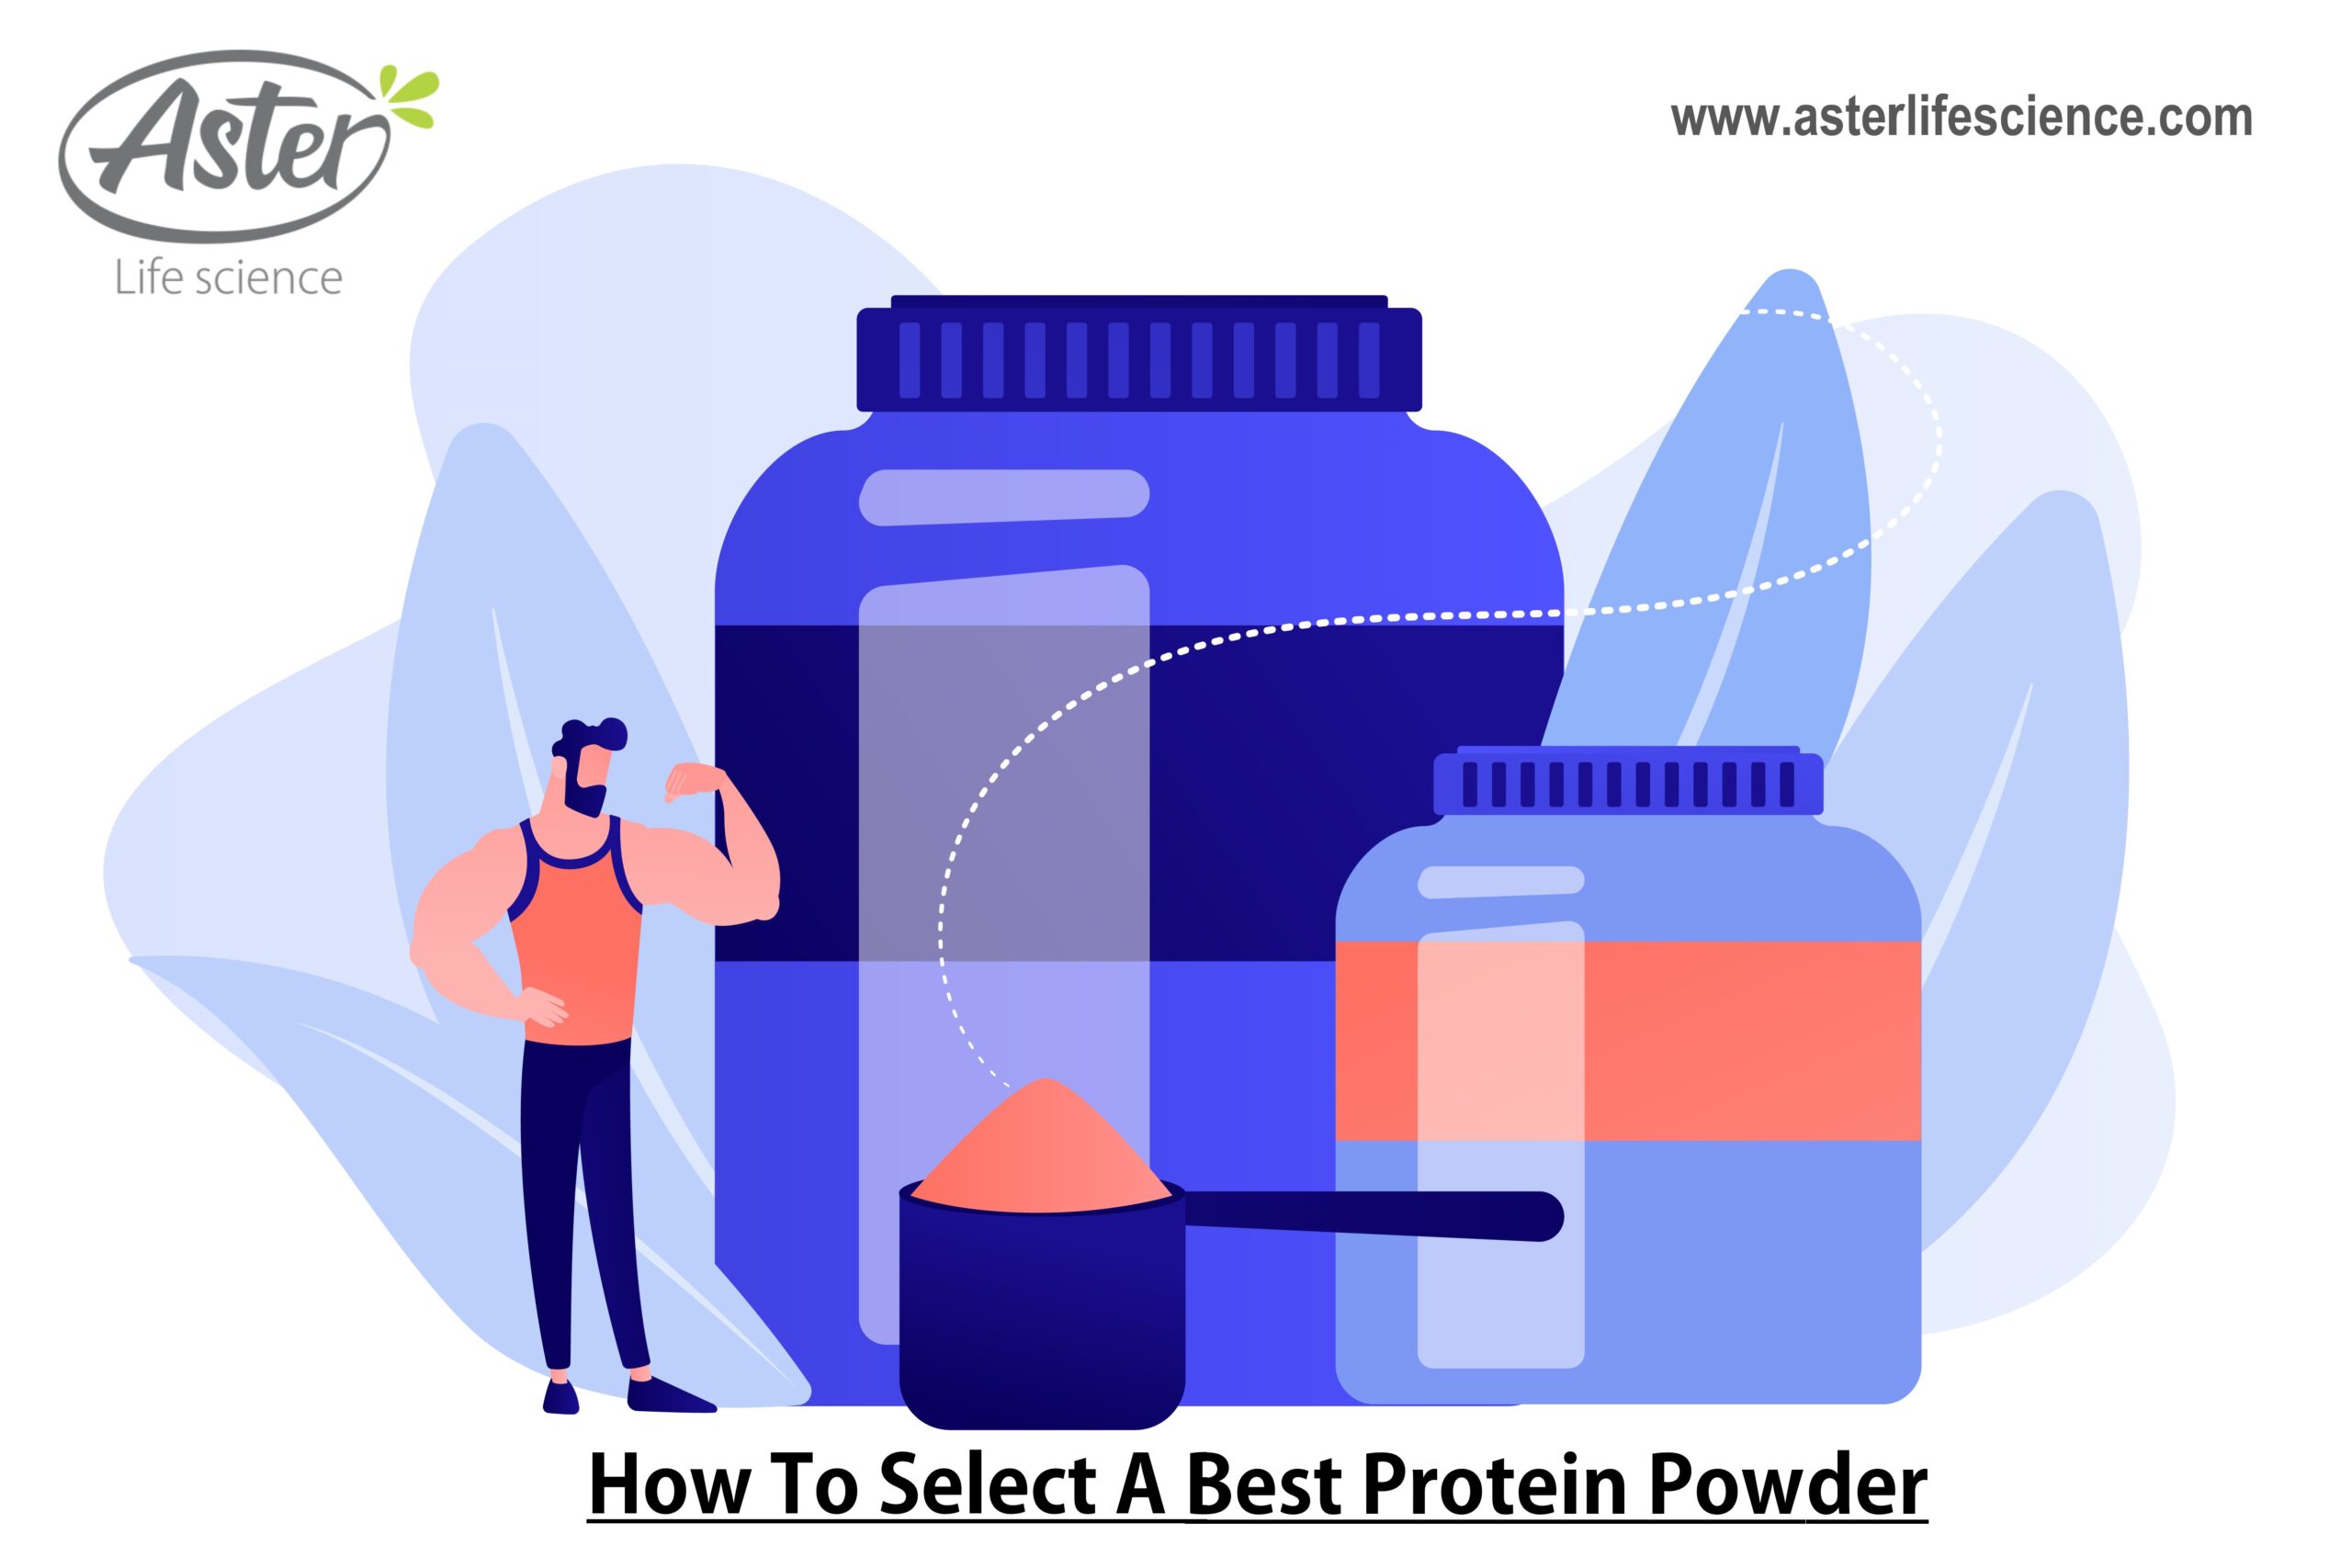 Best Protein Powder